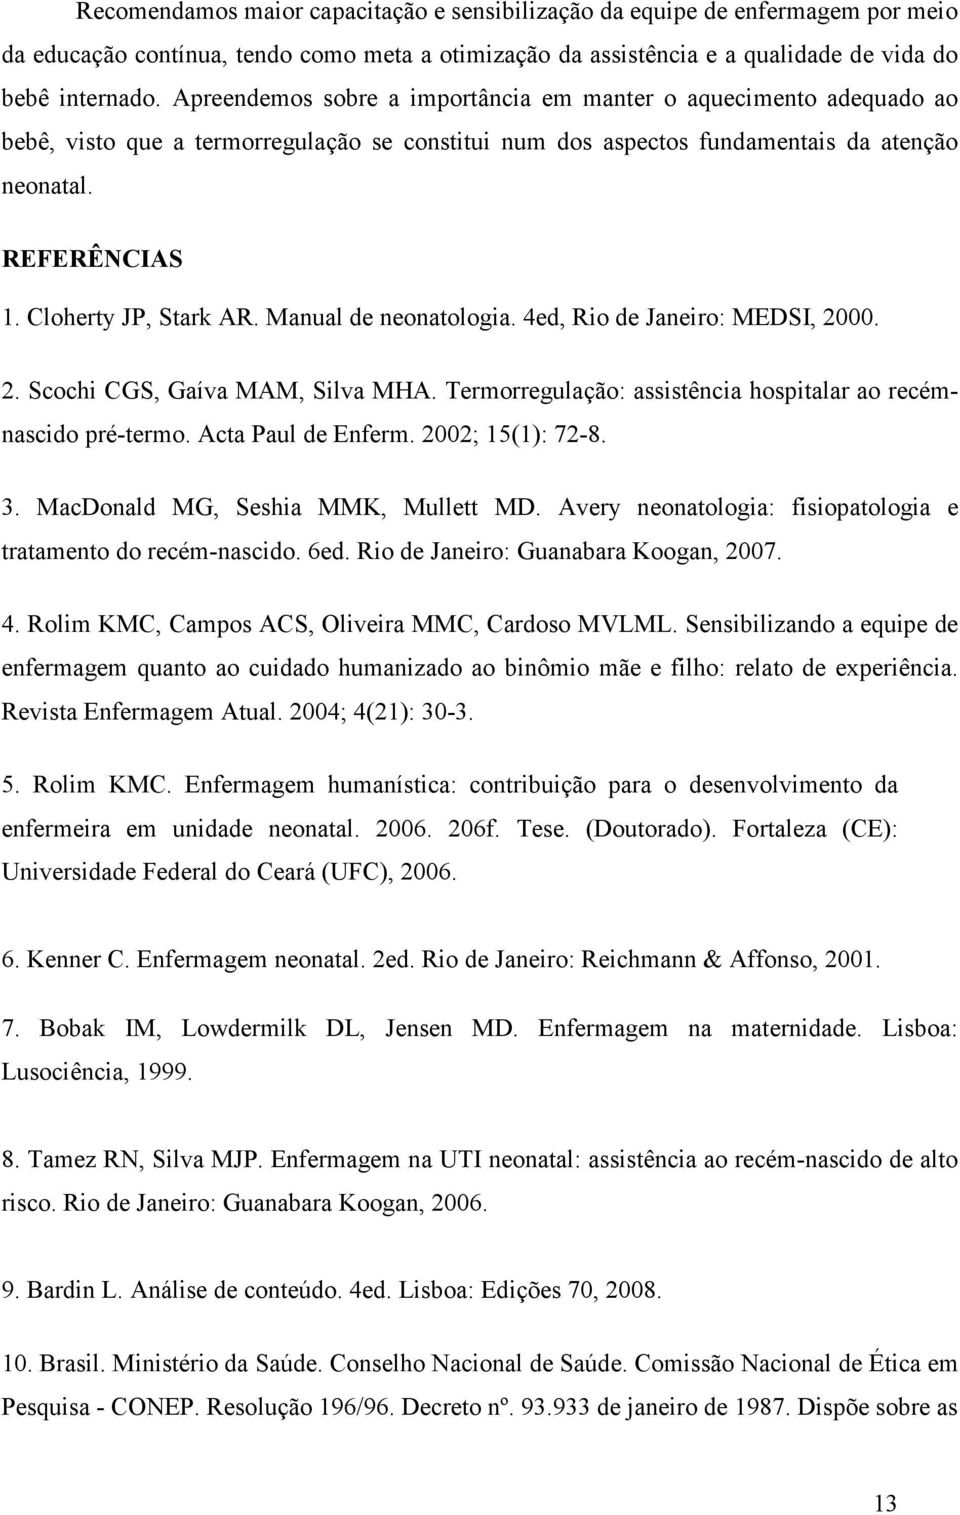 Cloherty JP, Stark AR. Manual de neonatologia. 4ed, Rio de Janeiro: MEDSI, 2000. 2. Scochi CGS, Gaíva MAM, Silva MHA. Termorregulação: assistência hospitalar ao recémnascido pré-termo.